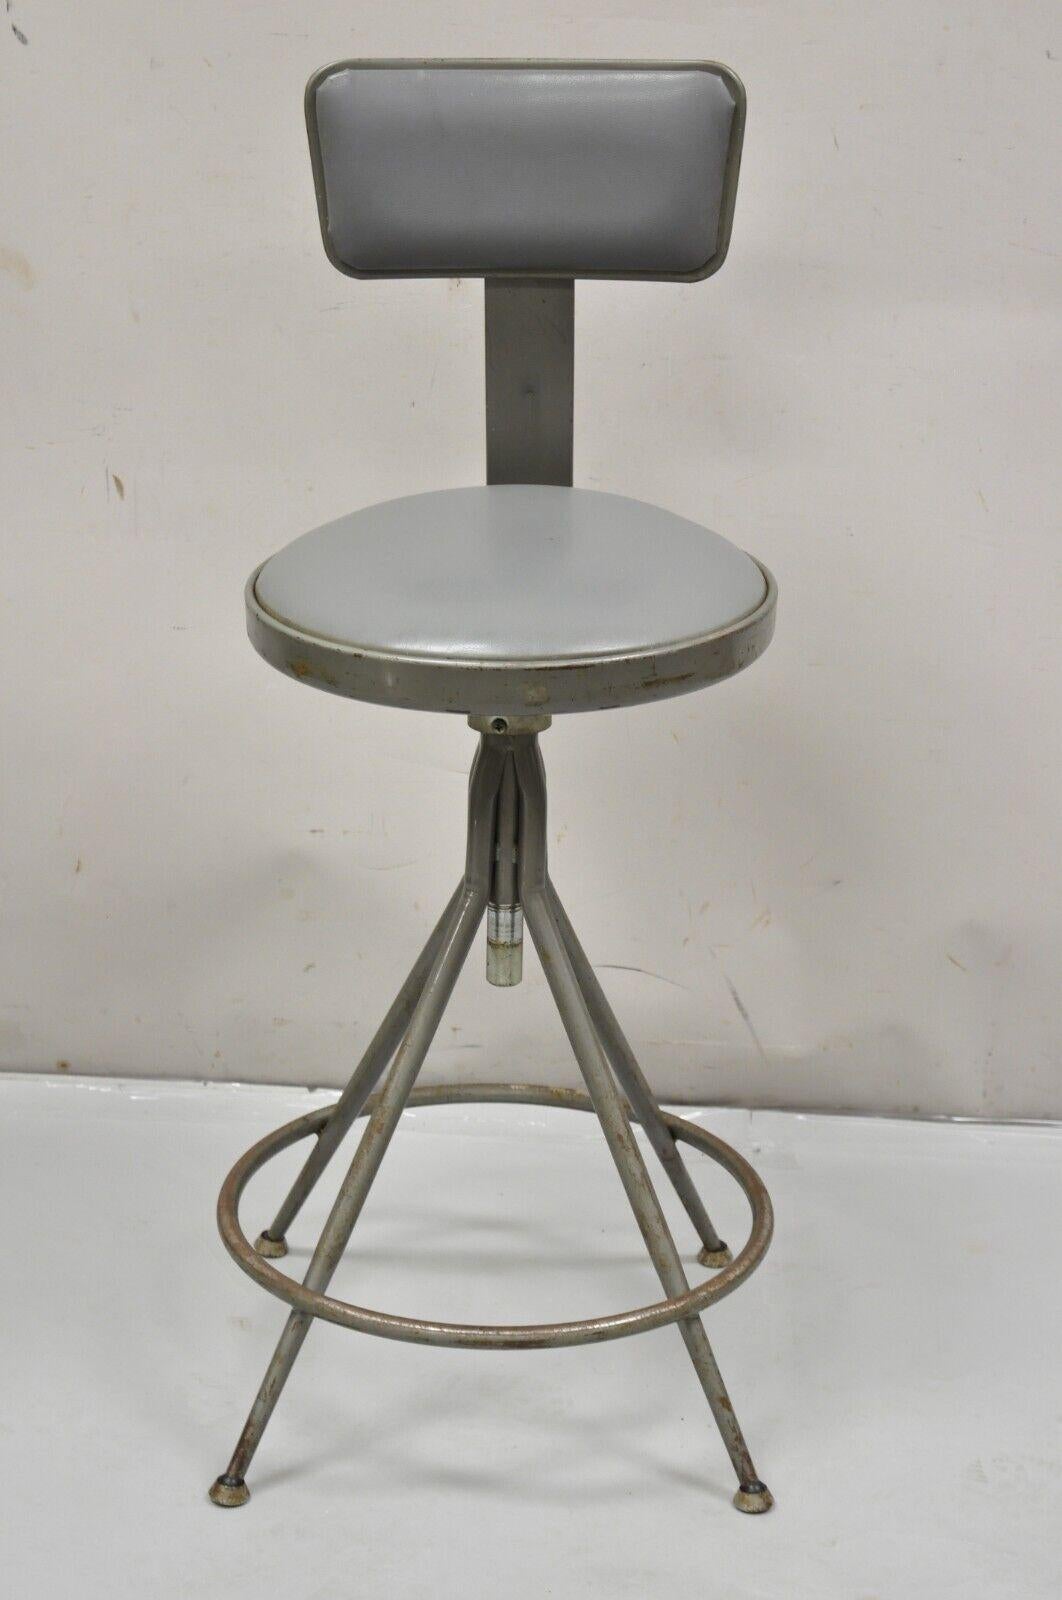 Vintage Industrial Gray Steel Metal Adjustable Drafting Stool Work Chair 6